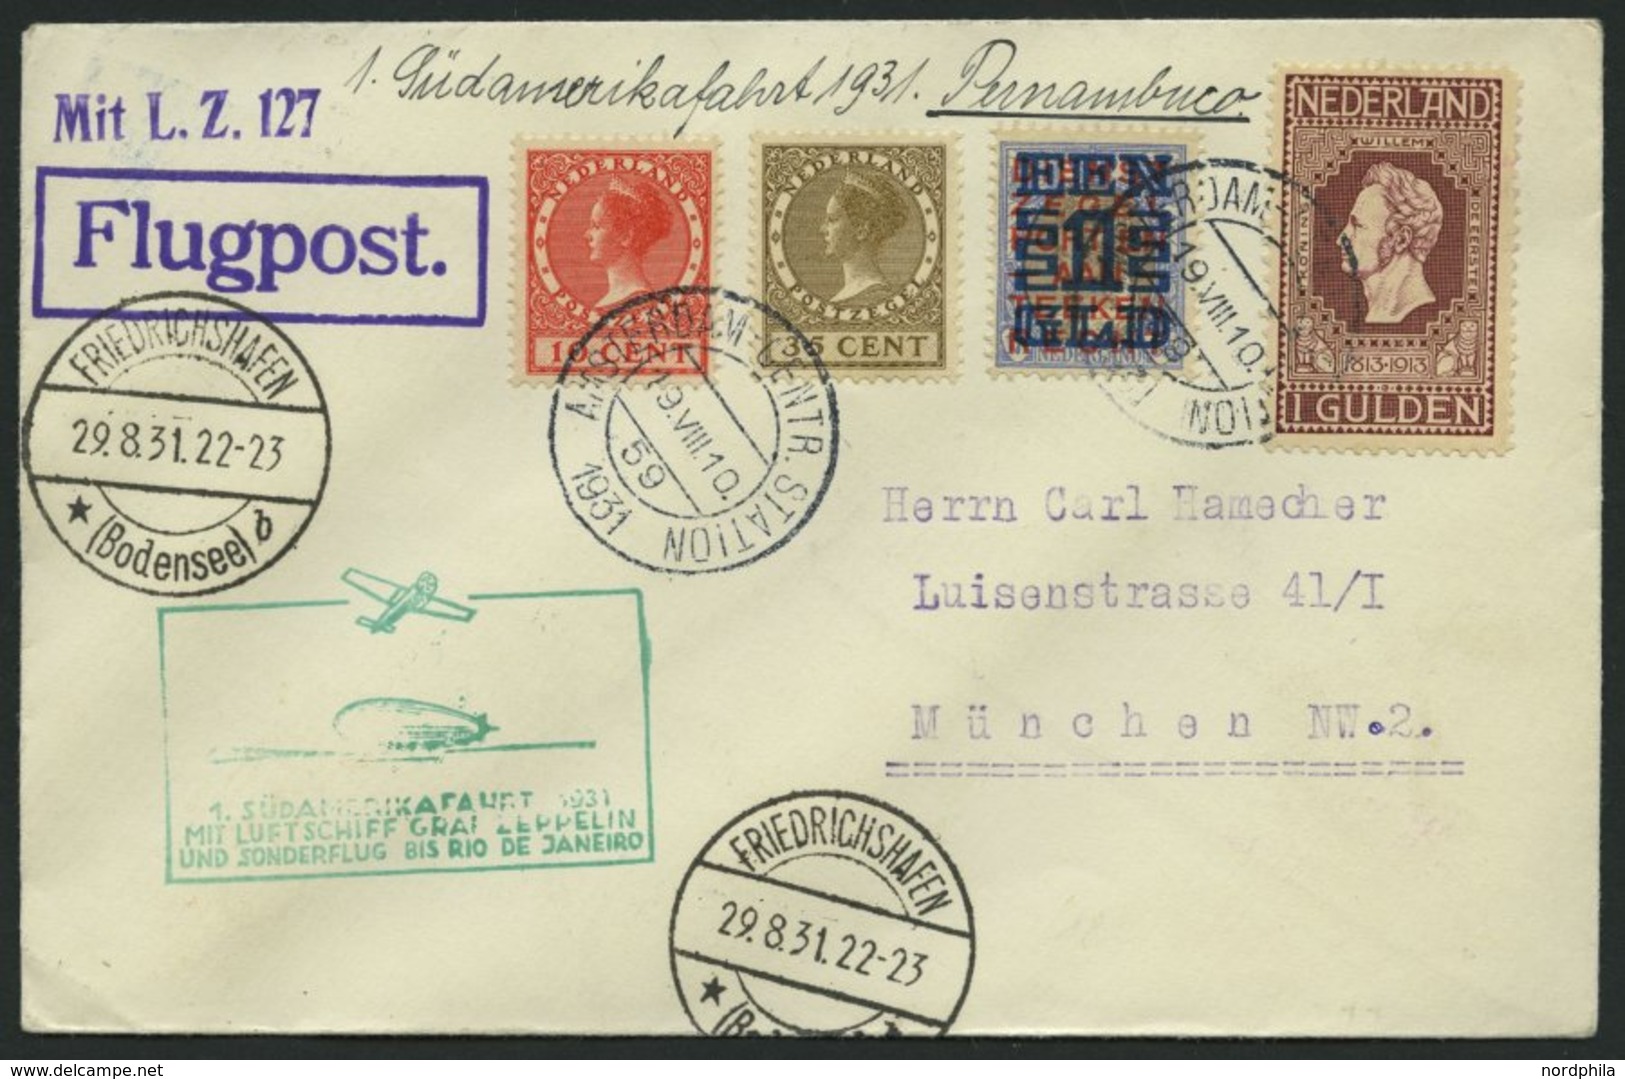 ZULEITUNGSPOST 124 BRIEF, Niederlande: 1931, 1. Südamerikafahrt, Bis Rio De Janeireo, Prachtbrief - Luft- Und Zeppelinpost